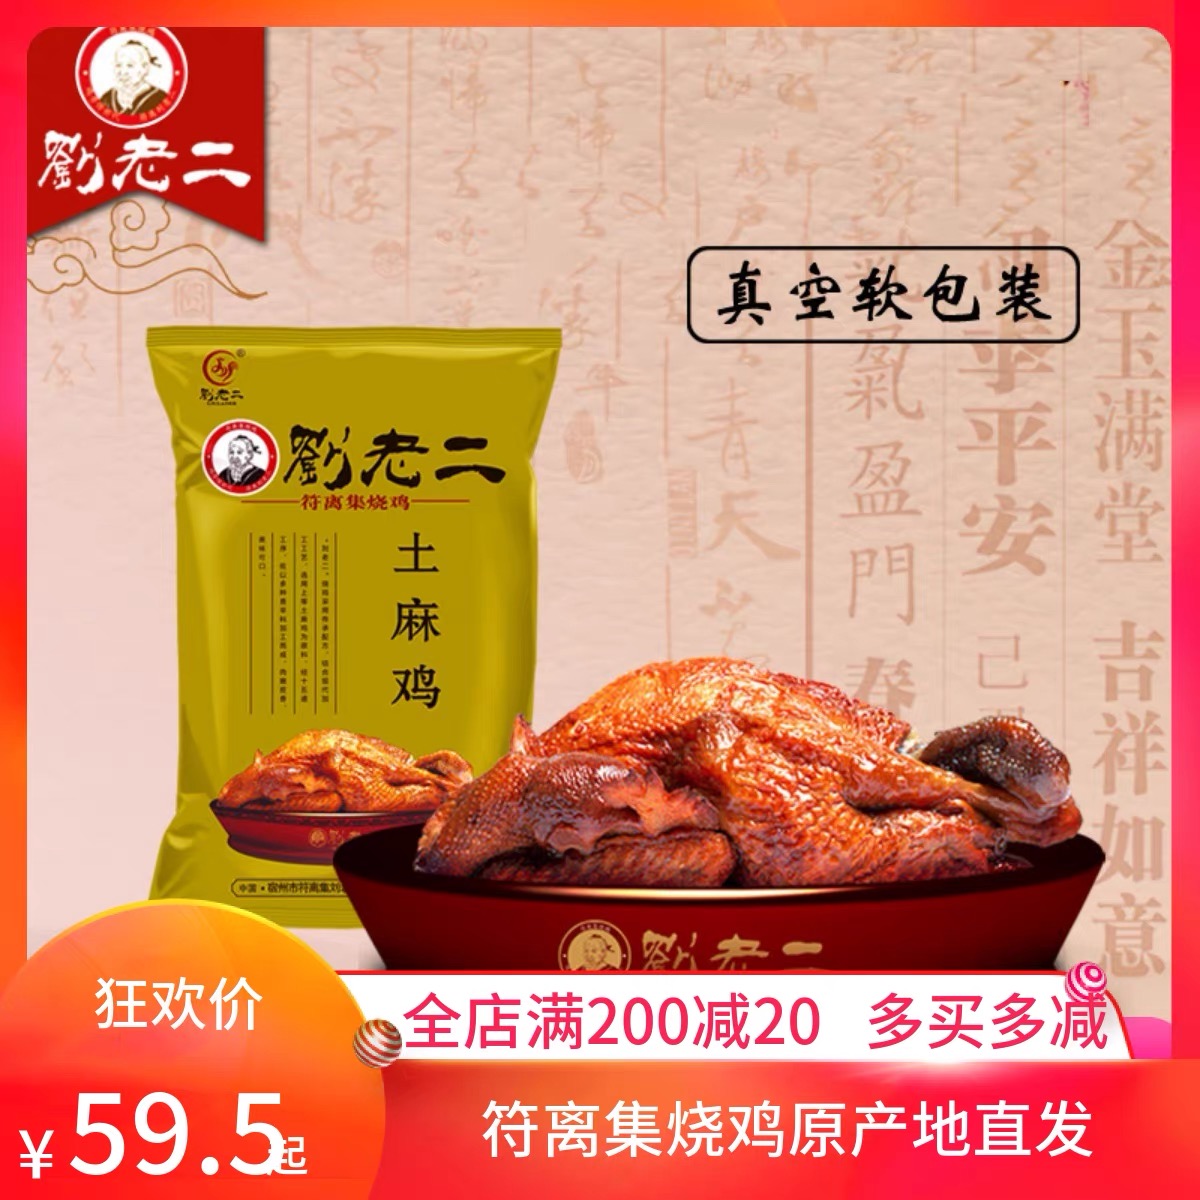 刘老二烧鸡符离集烧鸡600克土麻鸡一袋 休闲鸡肉类卤味熟食